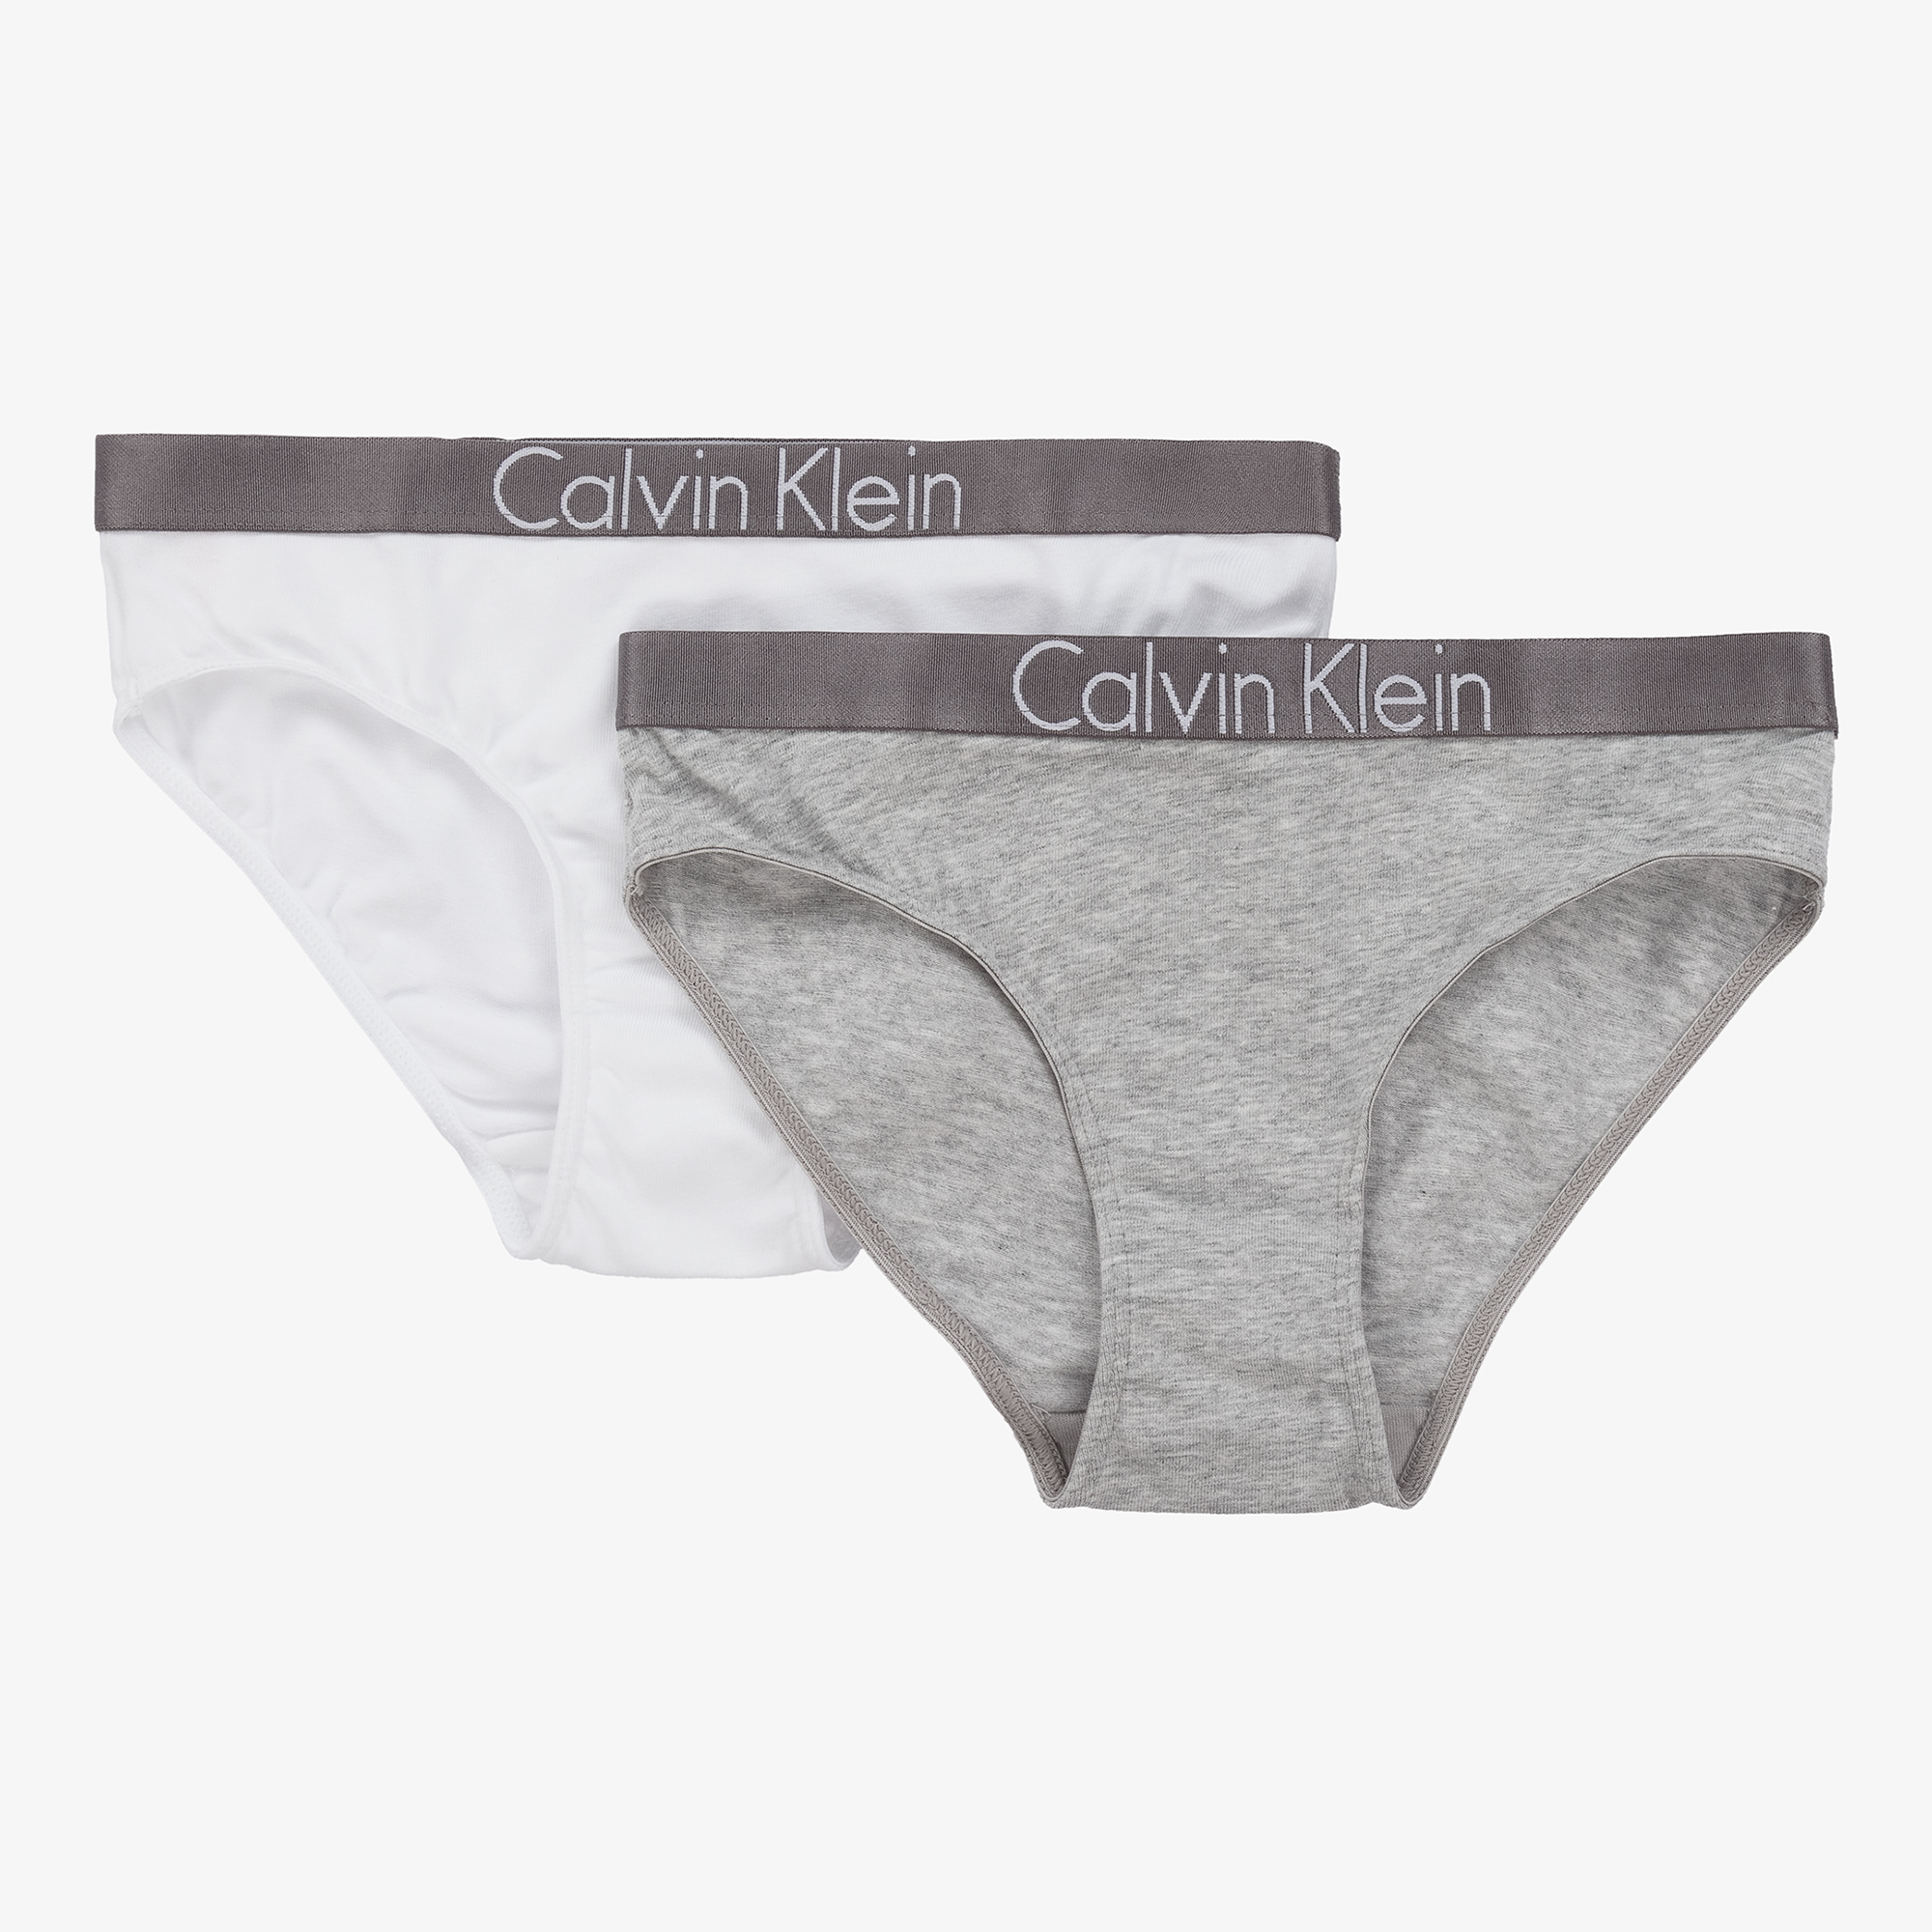 Calvin Klein - Girls Grey & White Cotton Knickers (2 Pack)